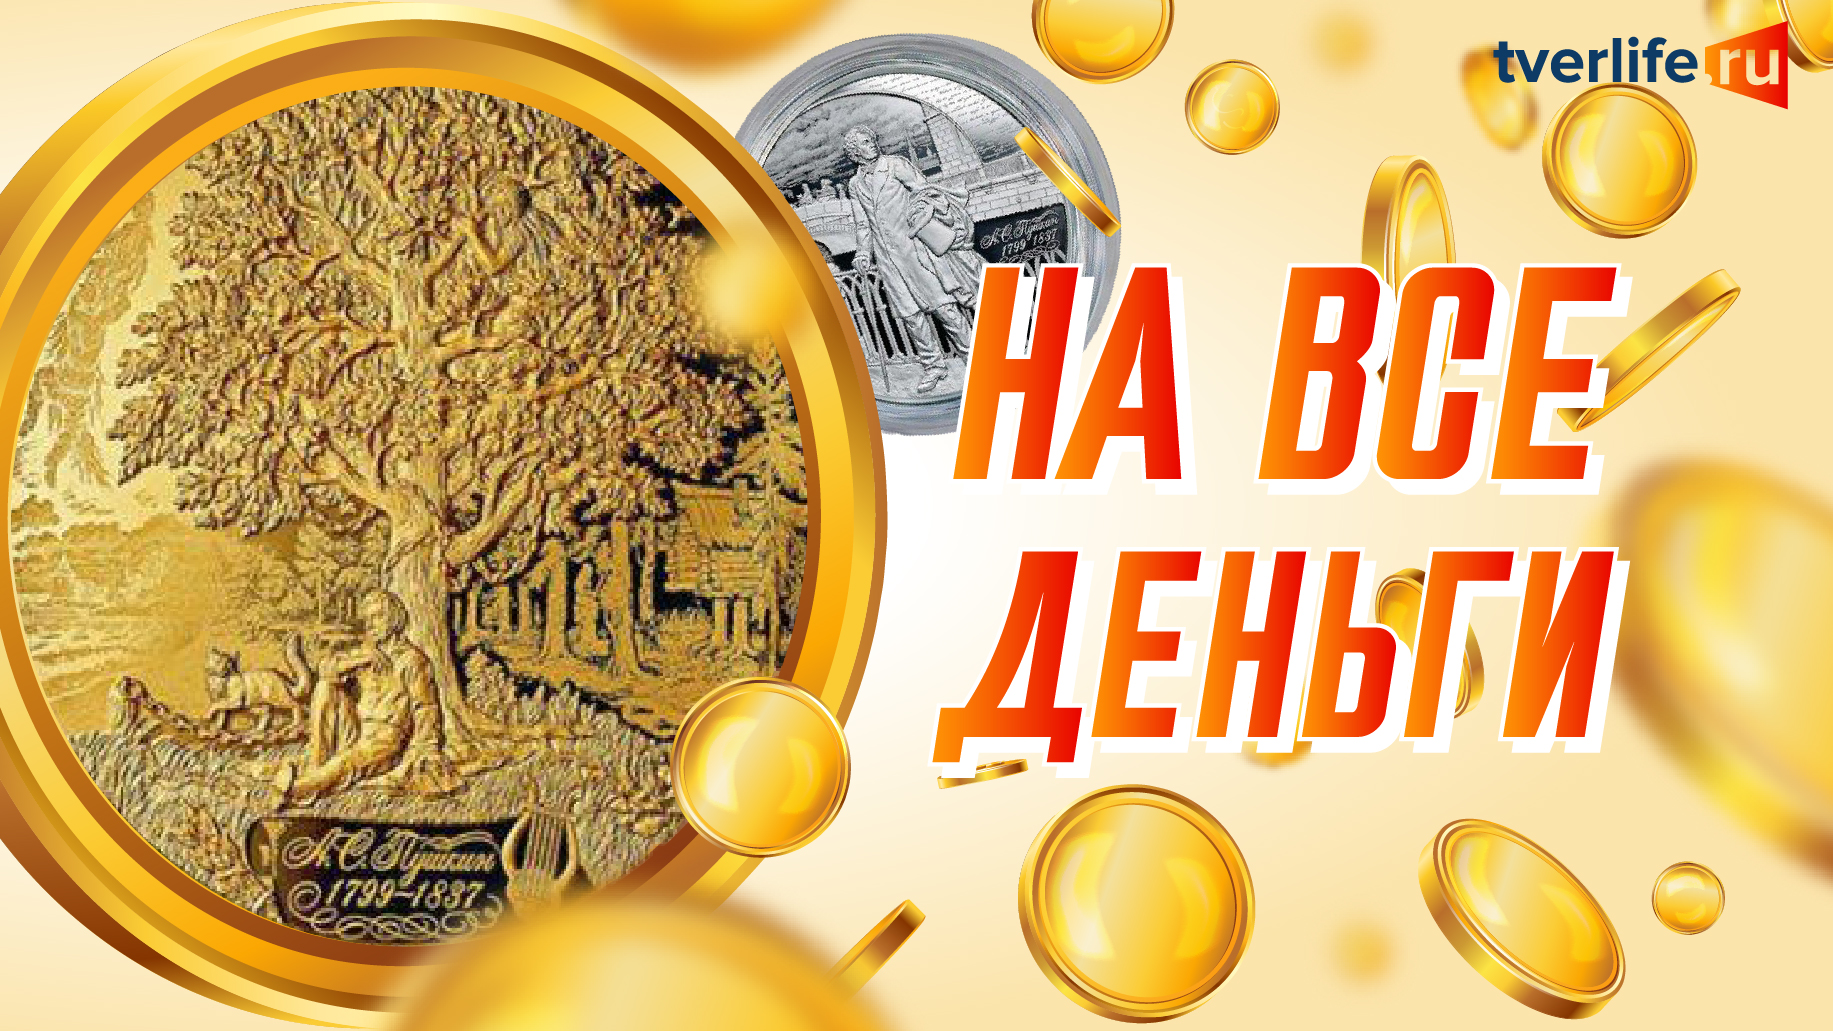 Банк России выпускает три драгоценные монеты к юбилею Пушкина